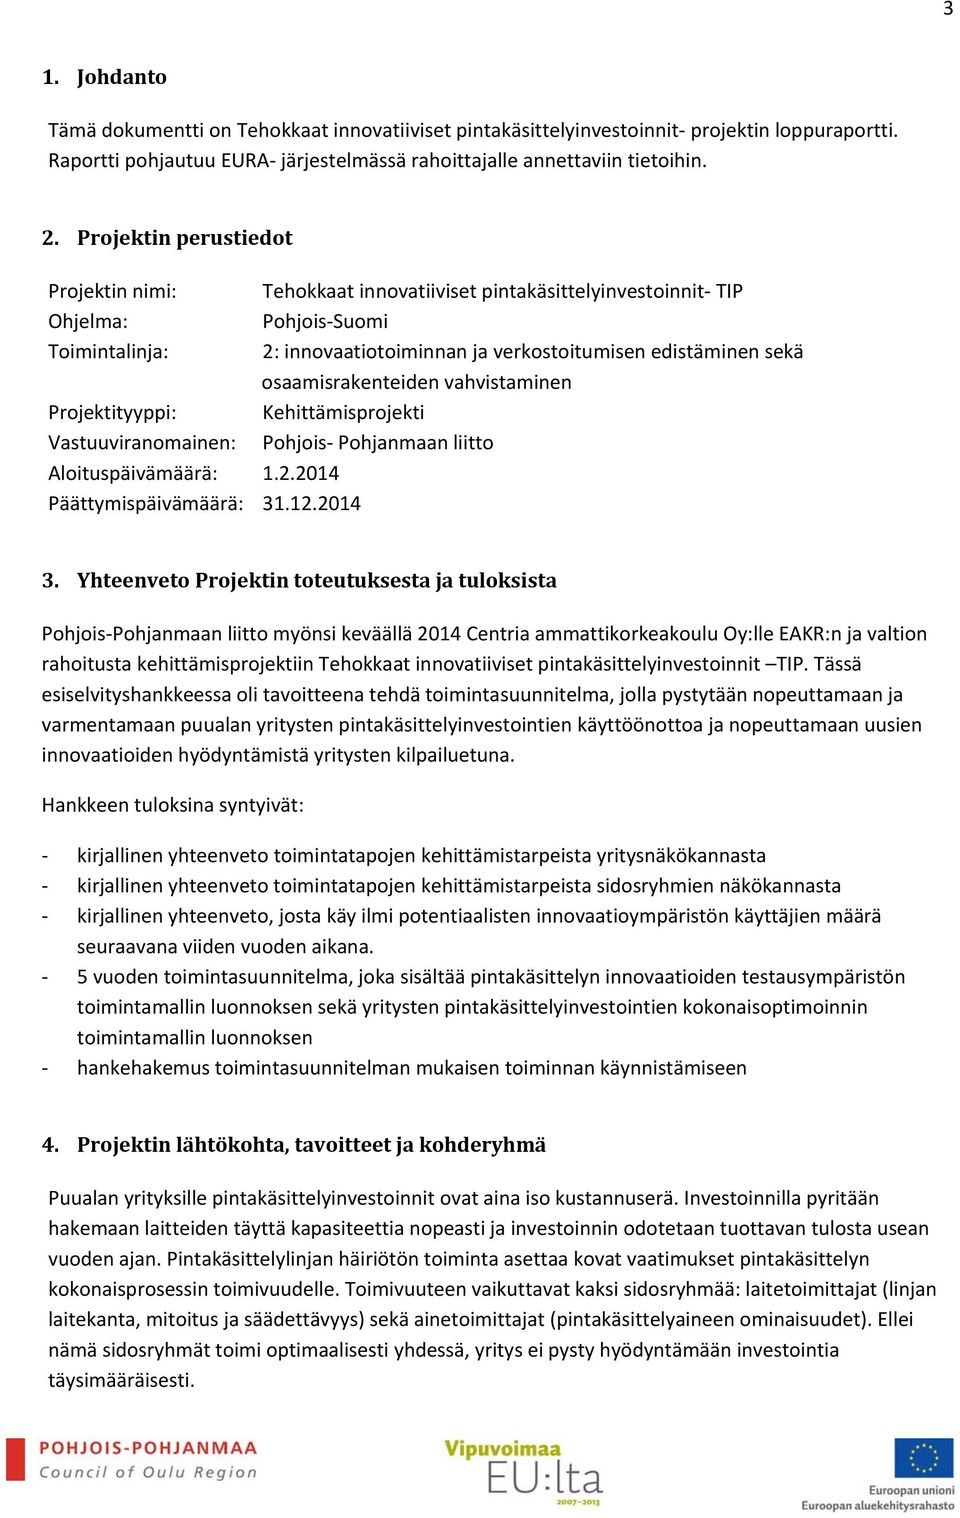 2014 Tehokkaat innovatiiviset pintakäsittelyinvestoinnit TIP Pohjois Suomi 2: innovaatiotoiminnan ja verkostoitumisen edistäminen sekä osaamisrakenteiden vahvistaminen Kehittämisprojekti Pohjois